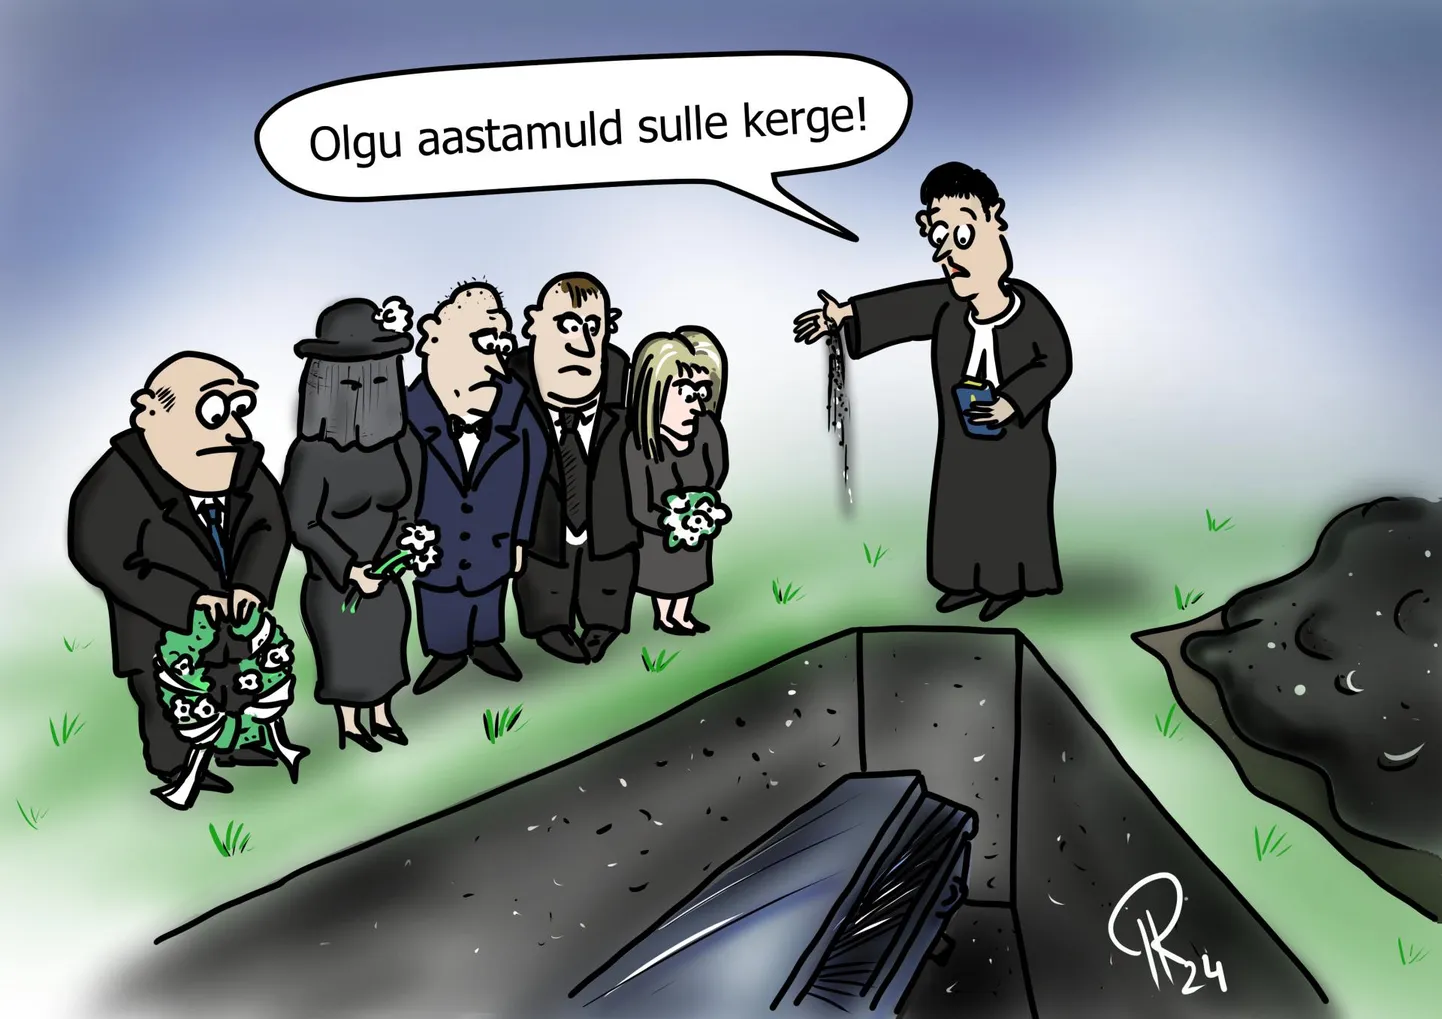 Nädala karikatuur "Aasta muld".